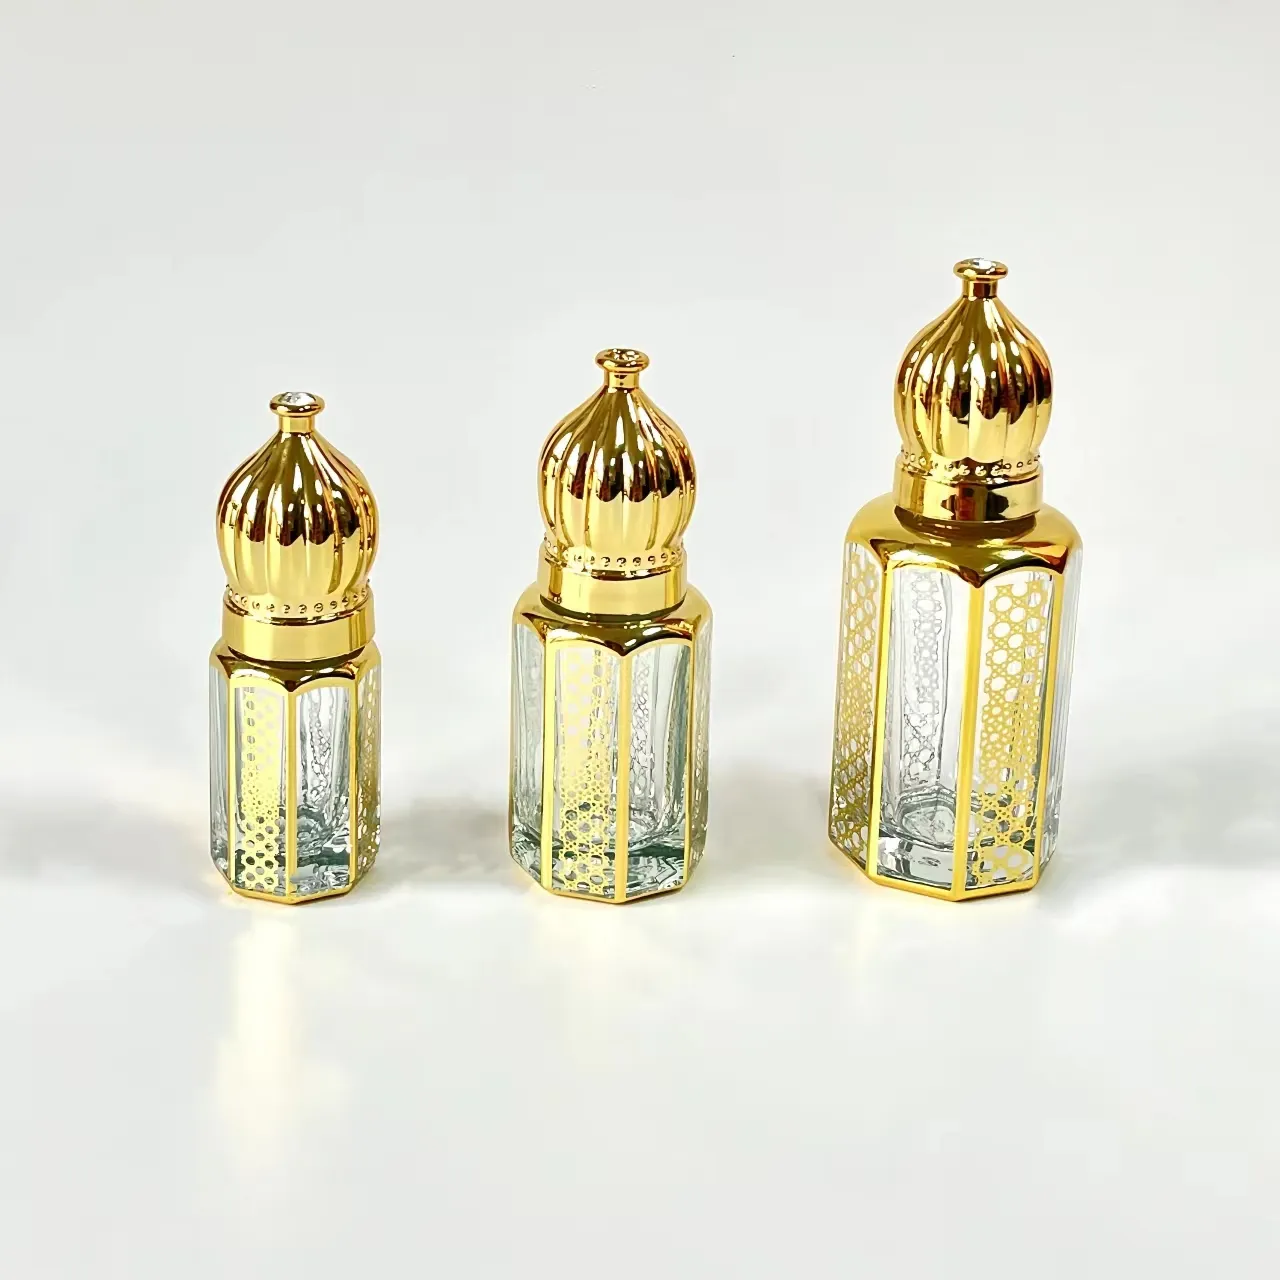 Commercio all'ingrosso di lusso 3ml 6ml 12ml arabo medio-orientale Dubai vetro bastone olio essenziale bottiglia di profumo